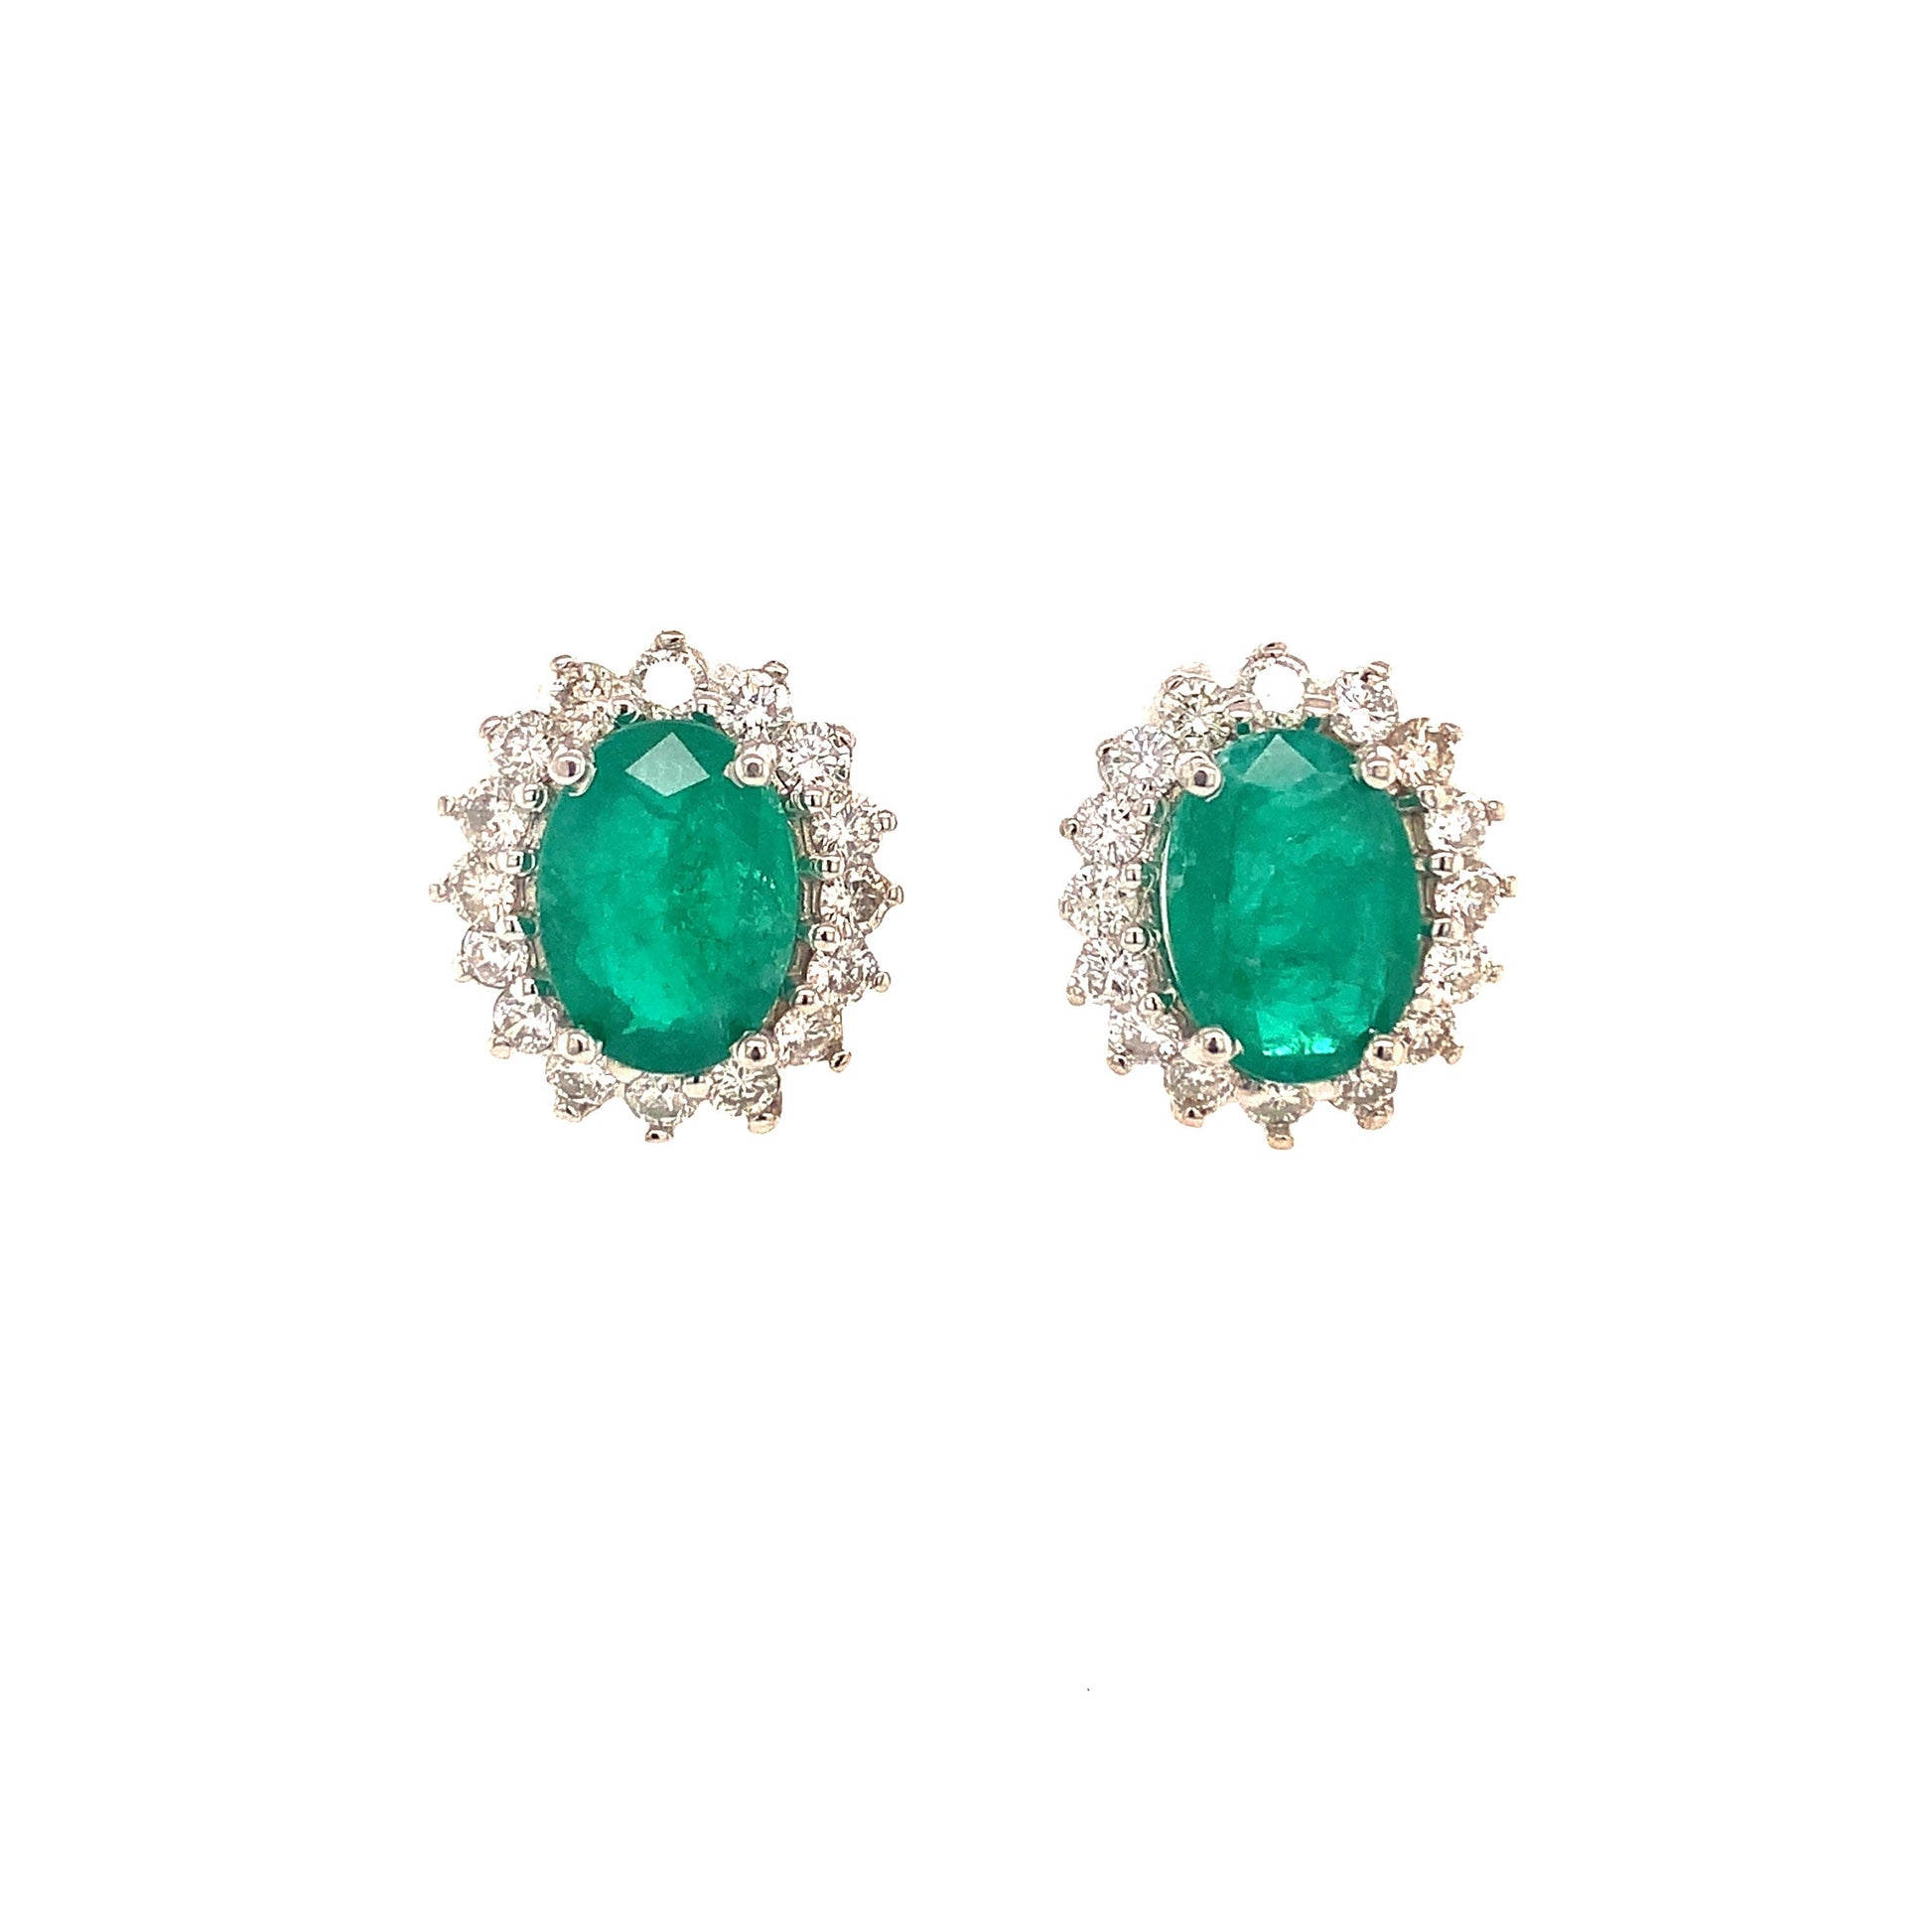 Natural Emerald Diamond Earrings 14k Gold 5.03 TCW Certified $6,550 113437 - Certified Fine Jewelry